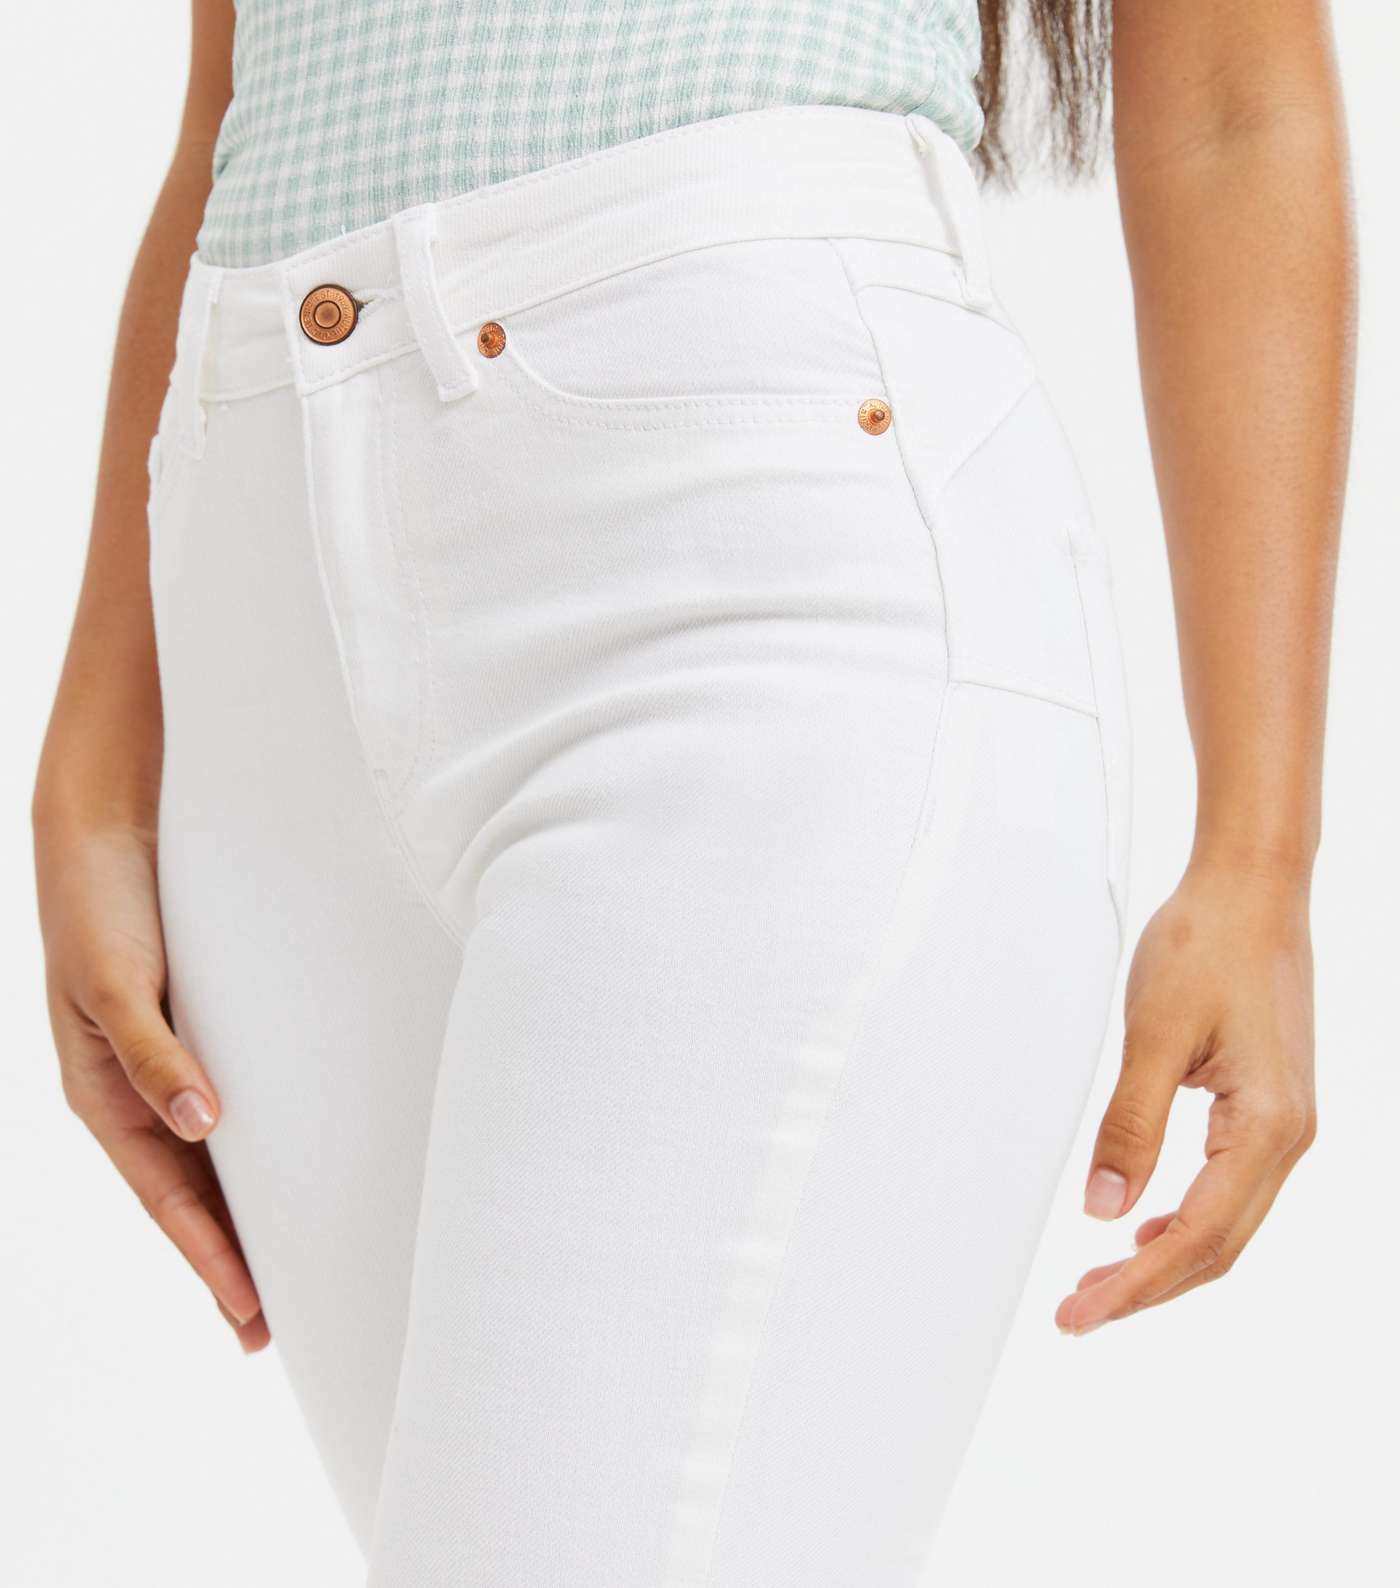 Petite White Lift & Shape Jenna Skinny Jeans Image 3